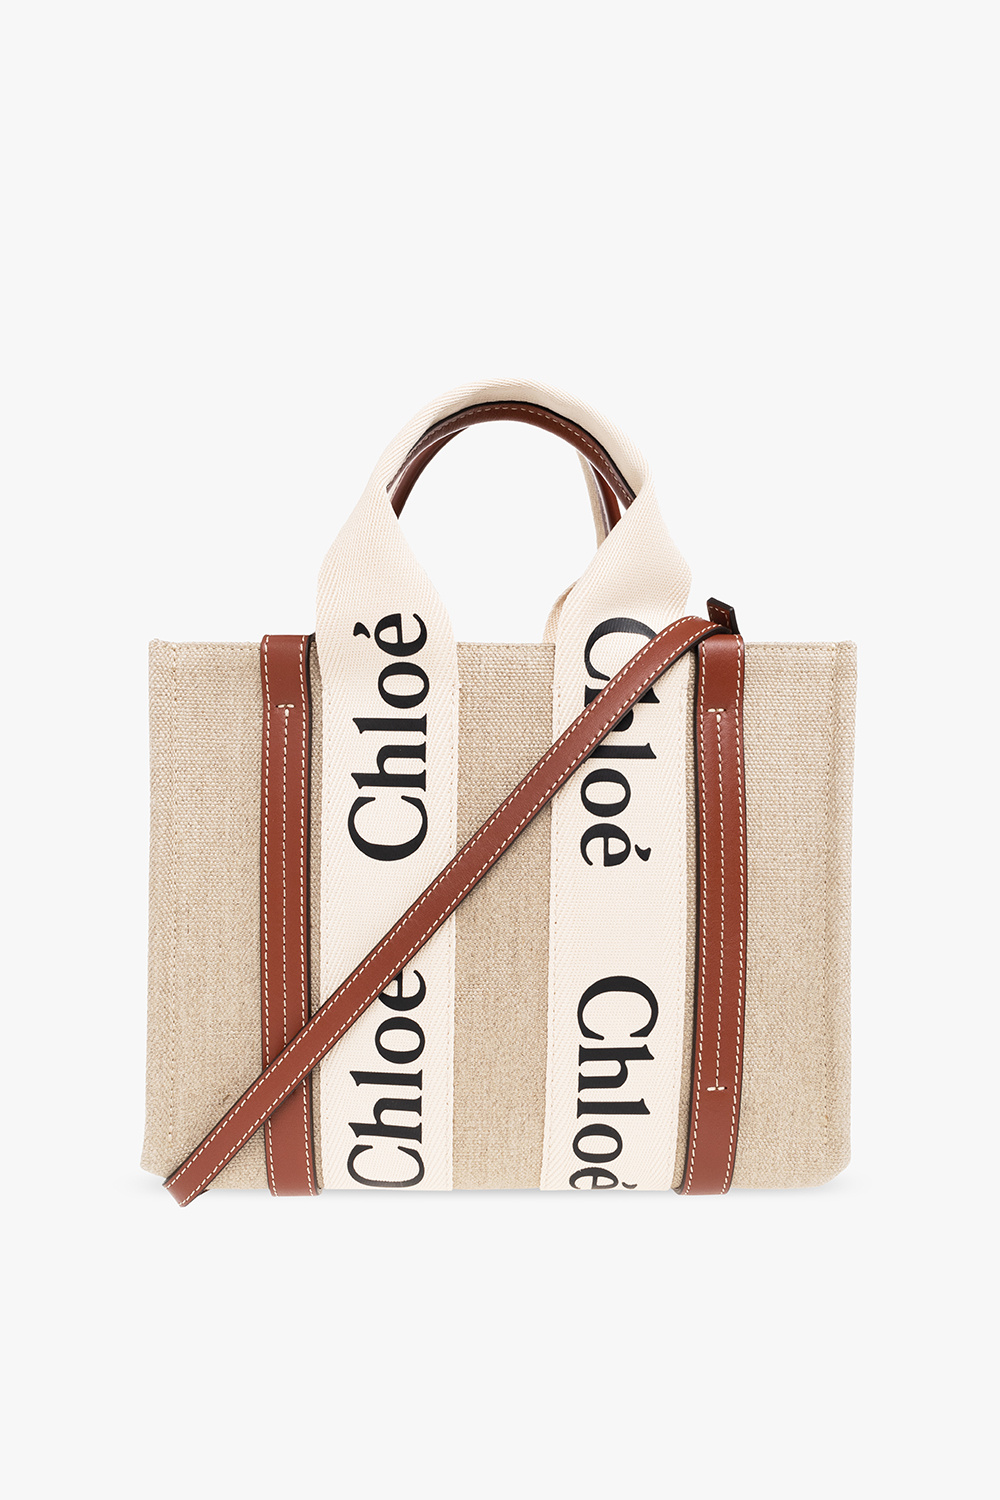 Chloé Mini Chloé C Bag, Chloé UK